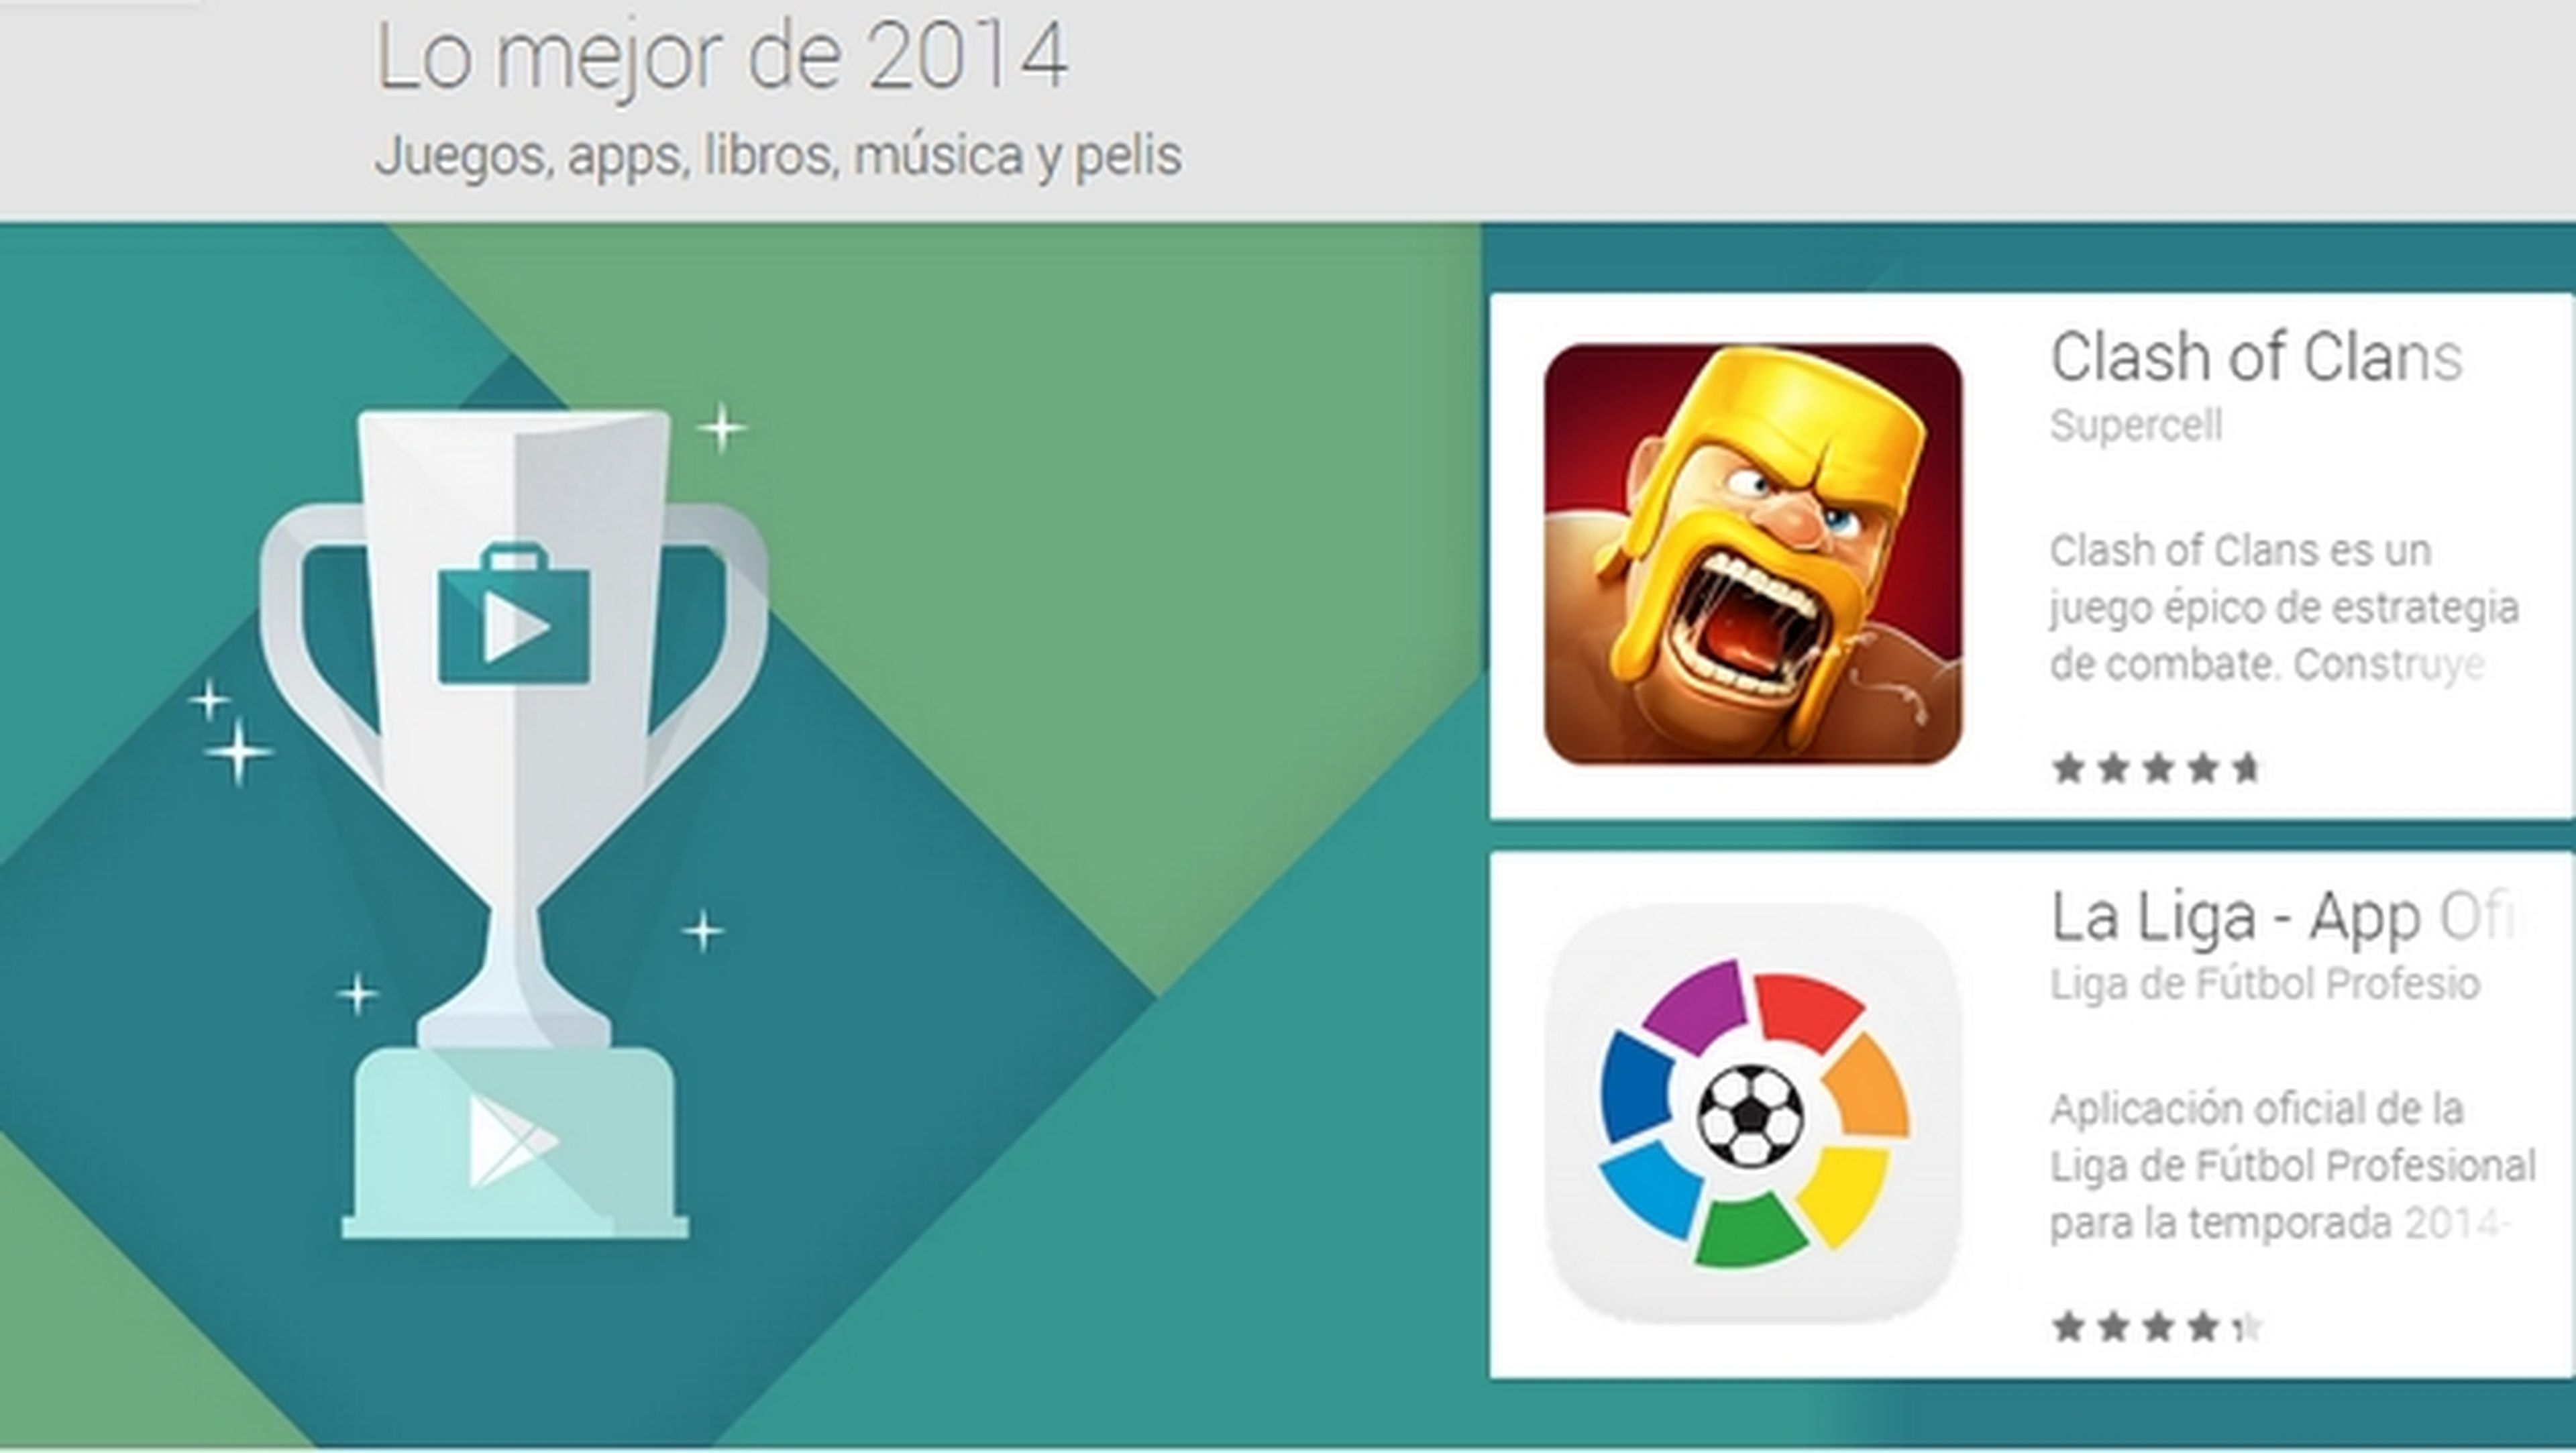 Google Play elige las Mejores Apps y juegos de 2014 para Android.